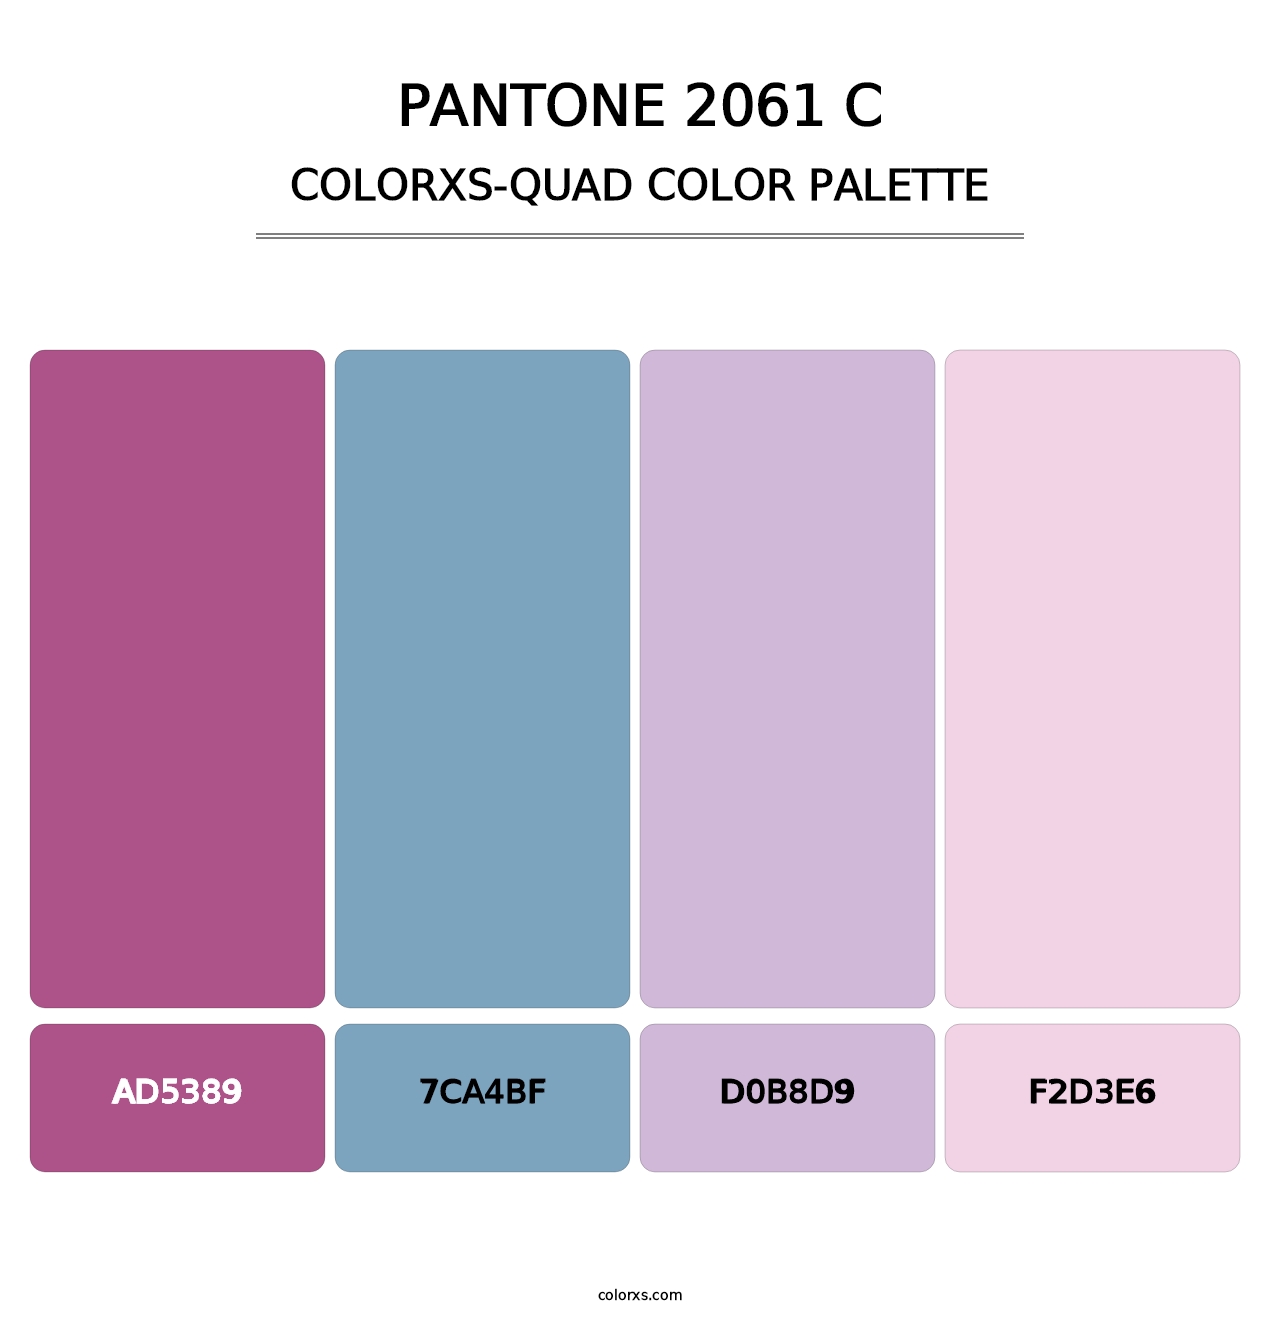 PANTONE 2061 C - Colorxs Quad Palette